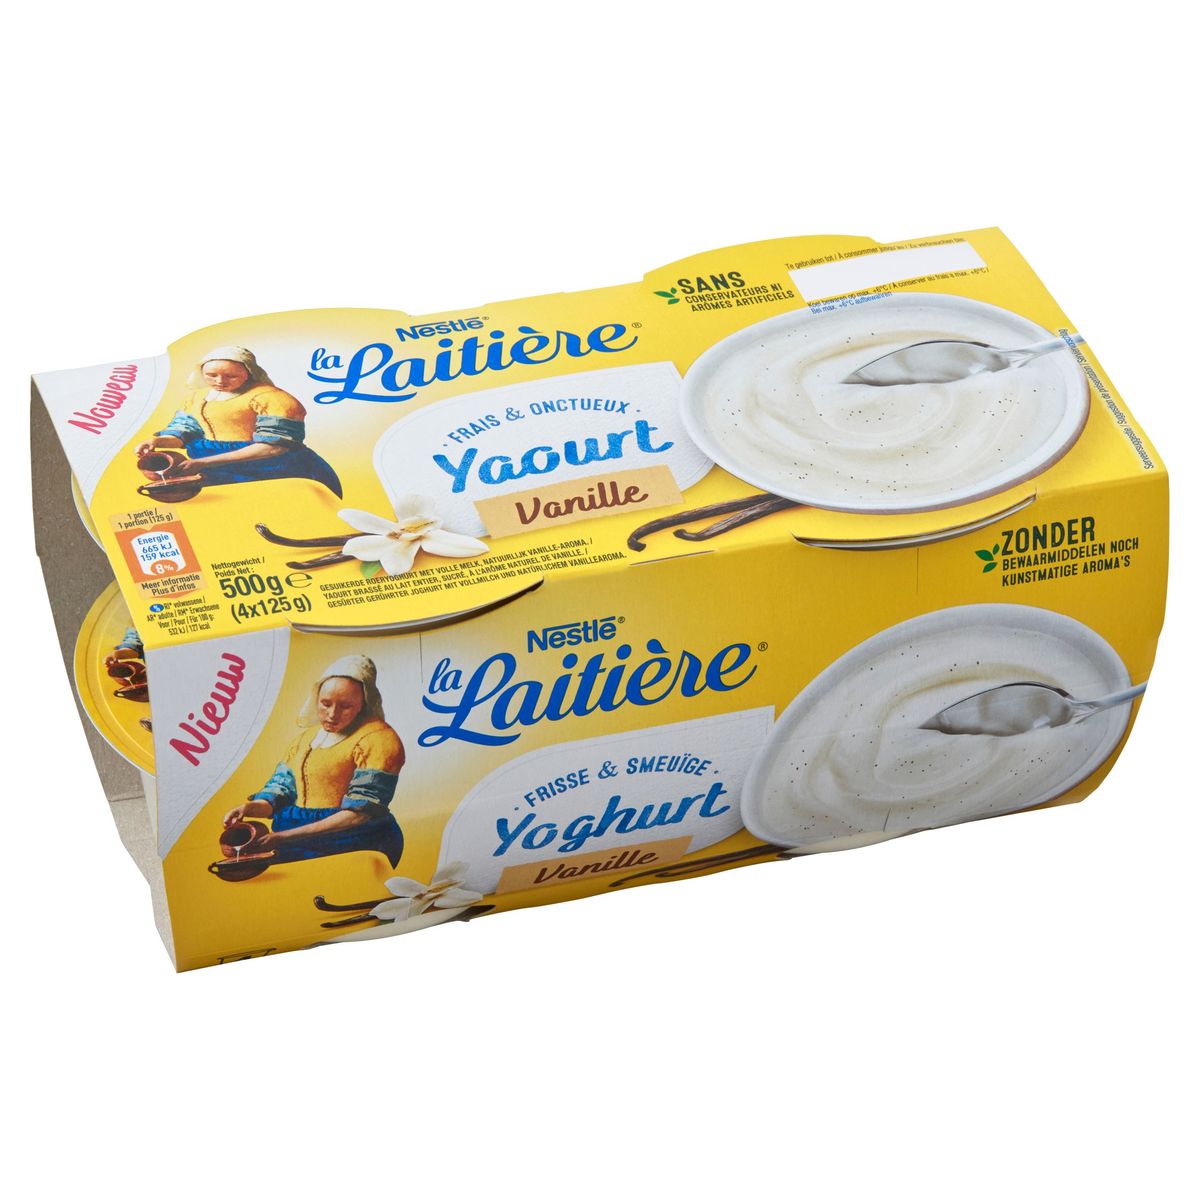 Yaourt pot laitier vanille - 4 x 125 g - DELISSE au meilleur prix